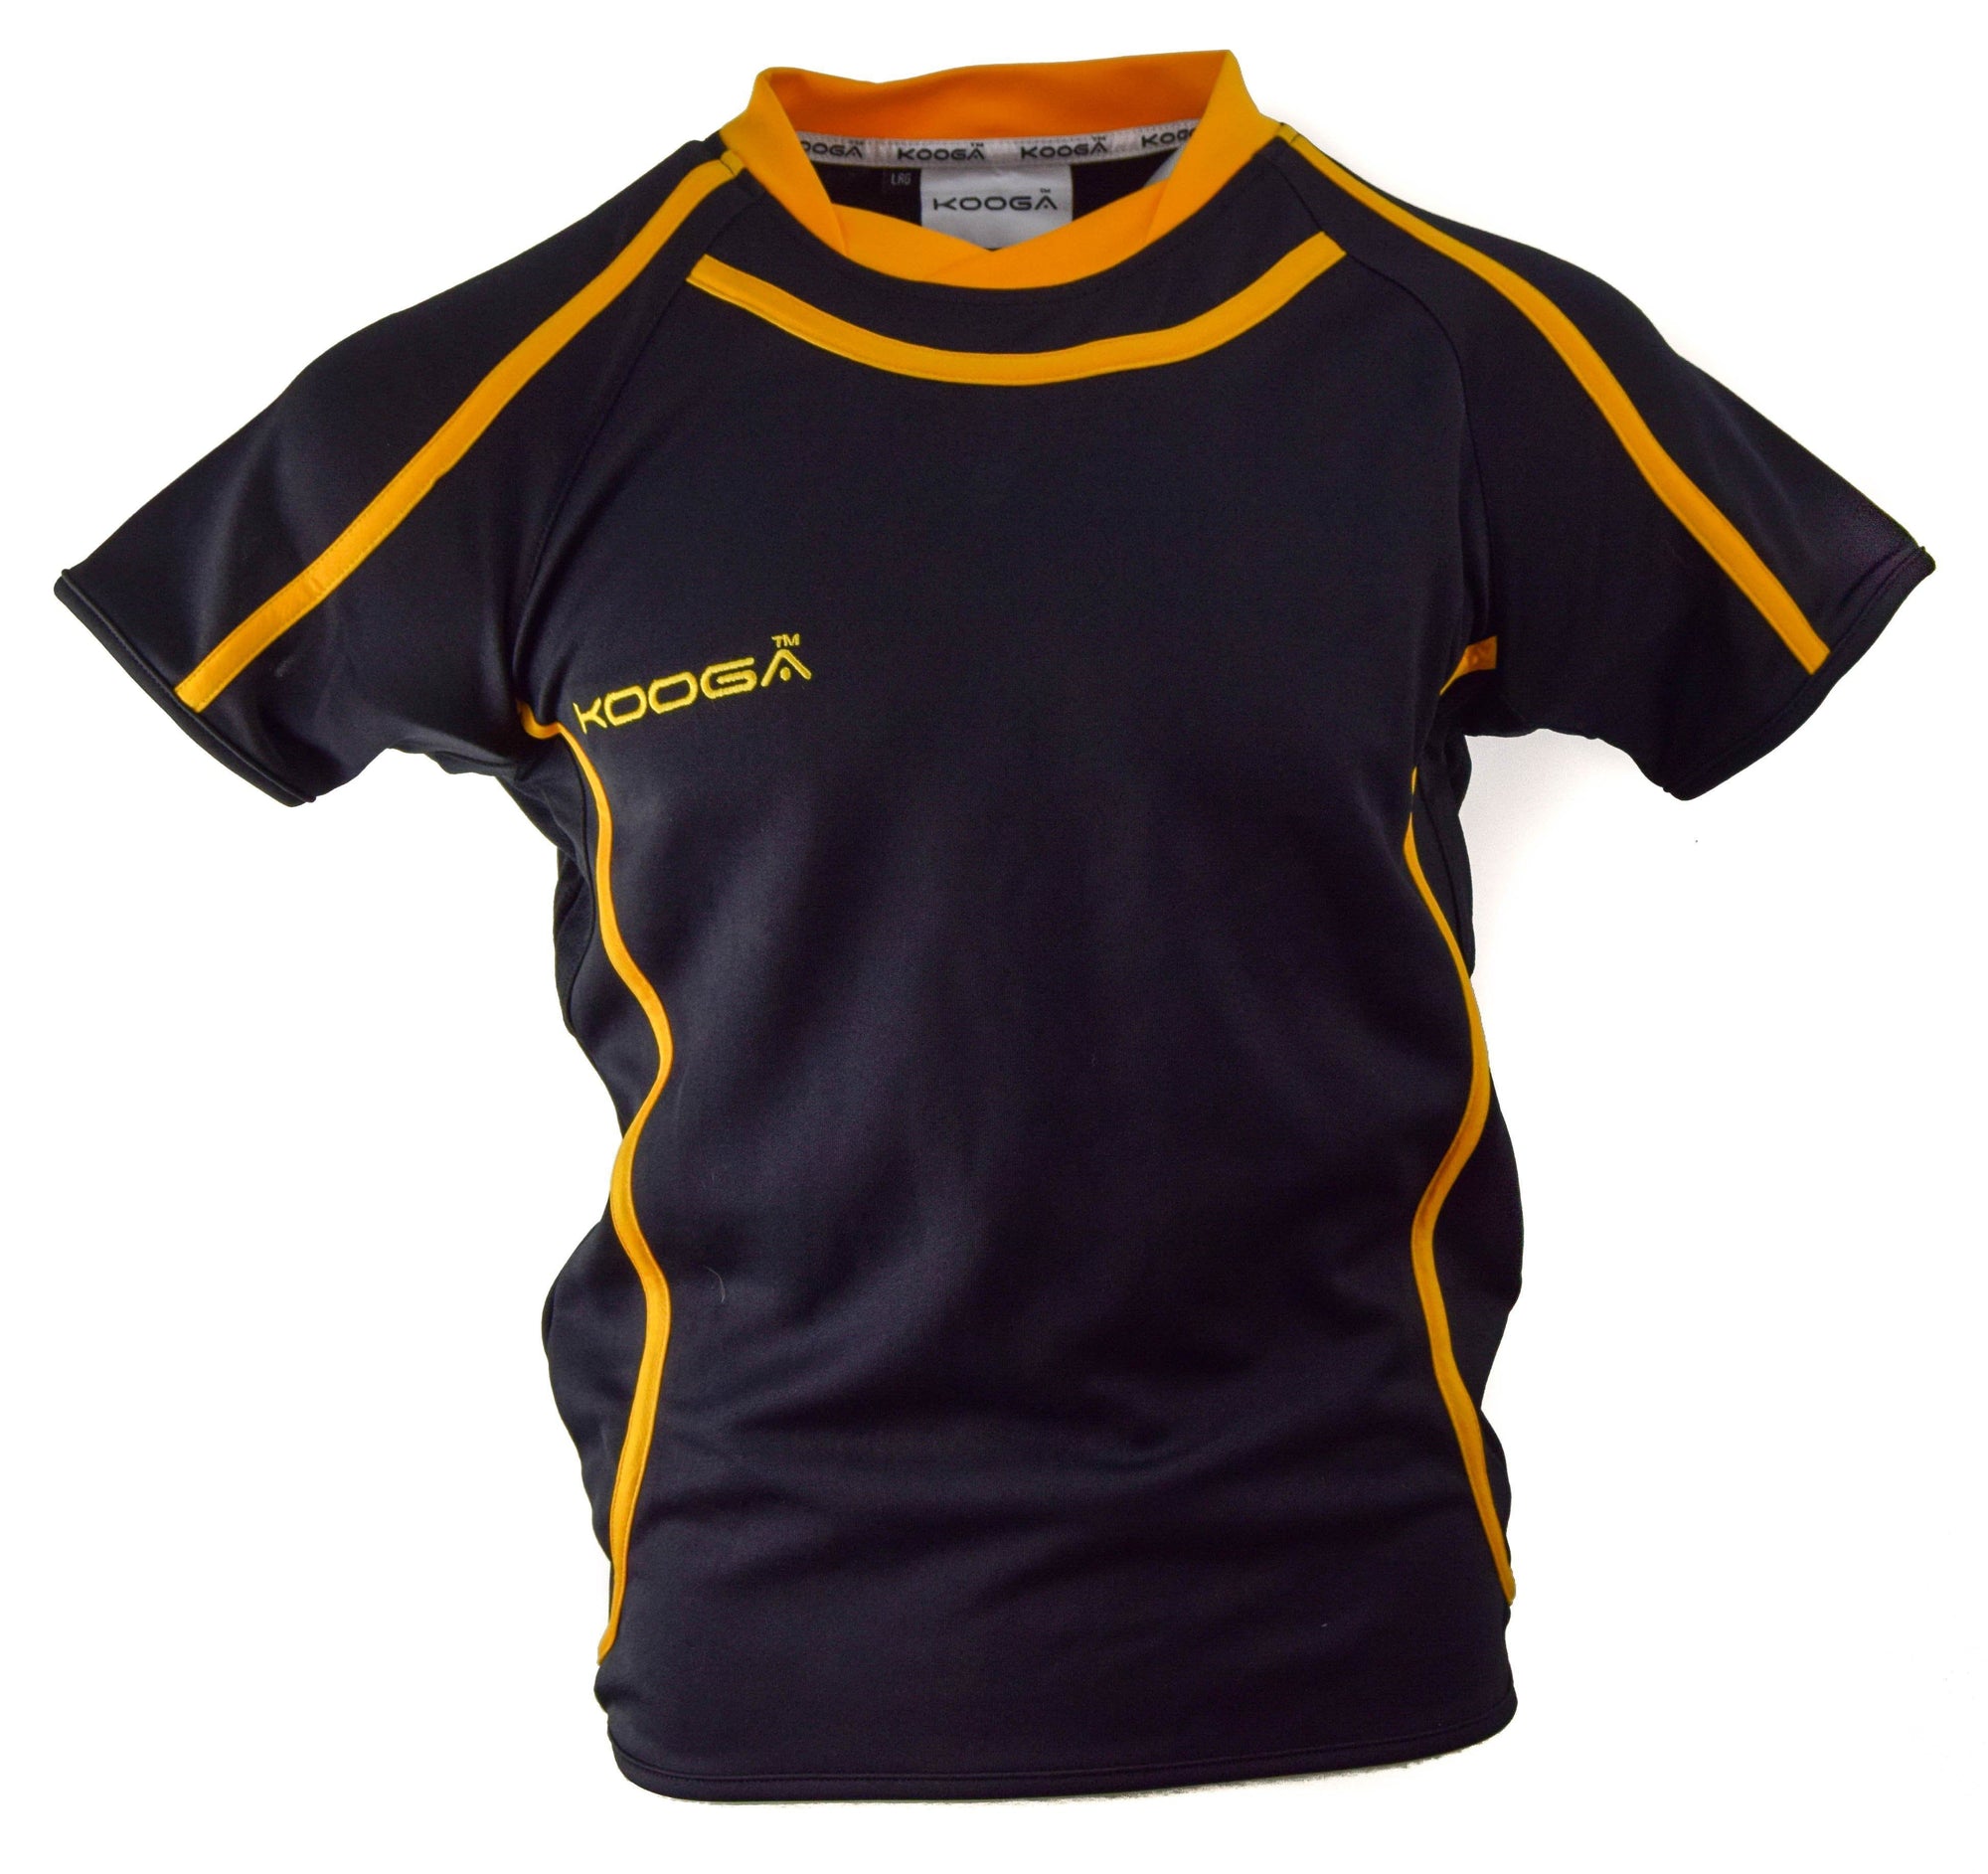 Match Apparel - Kooga Burner Rugby Jersey (Black/Gold): Clearance Sets